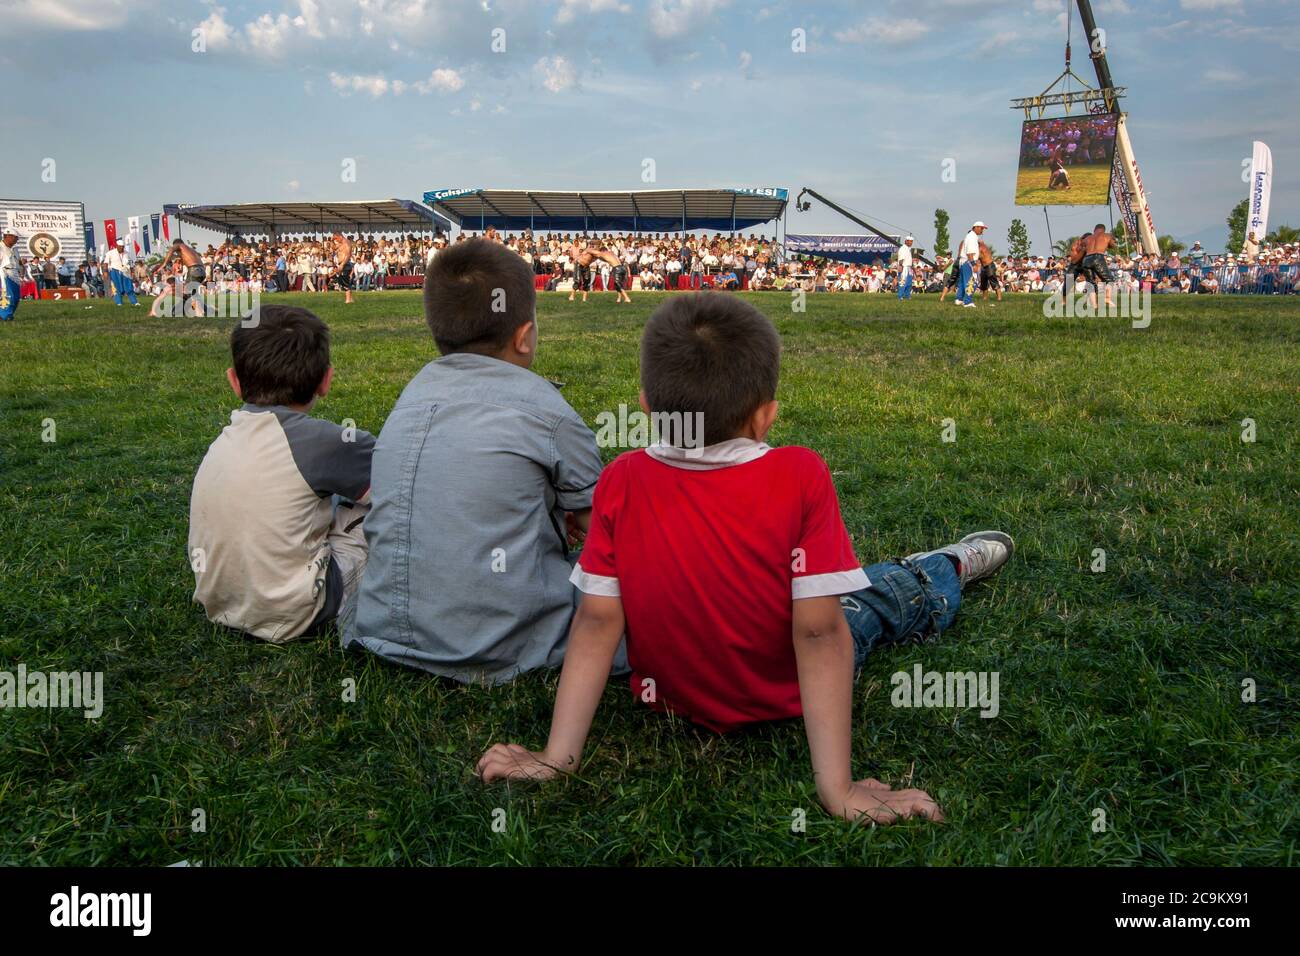 Tre ragazzi si siedono nell'arena della competizione per assistere alla battaglia dei lottatori di pesi pesanti al festival Izmit Turkish Oil Wrestling in Turchia. Foto Stock